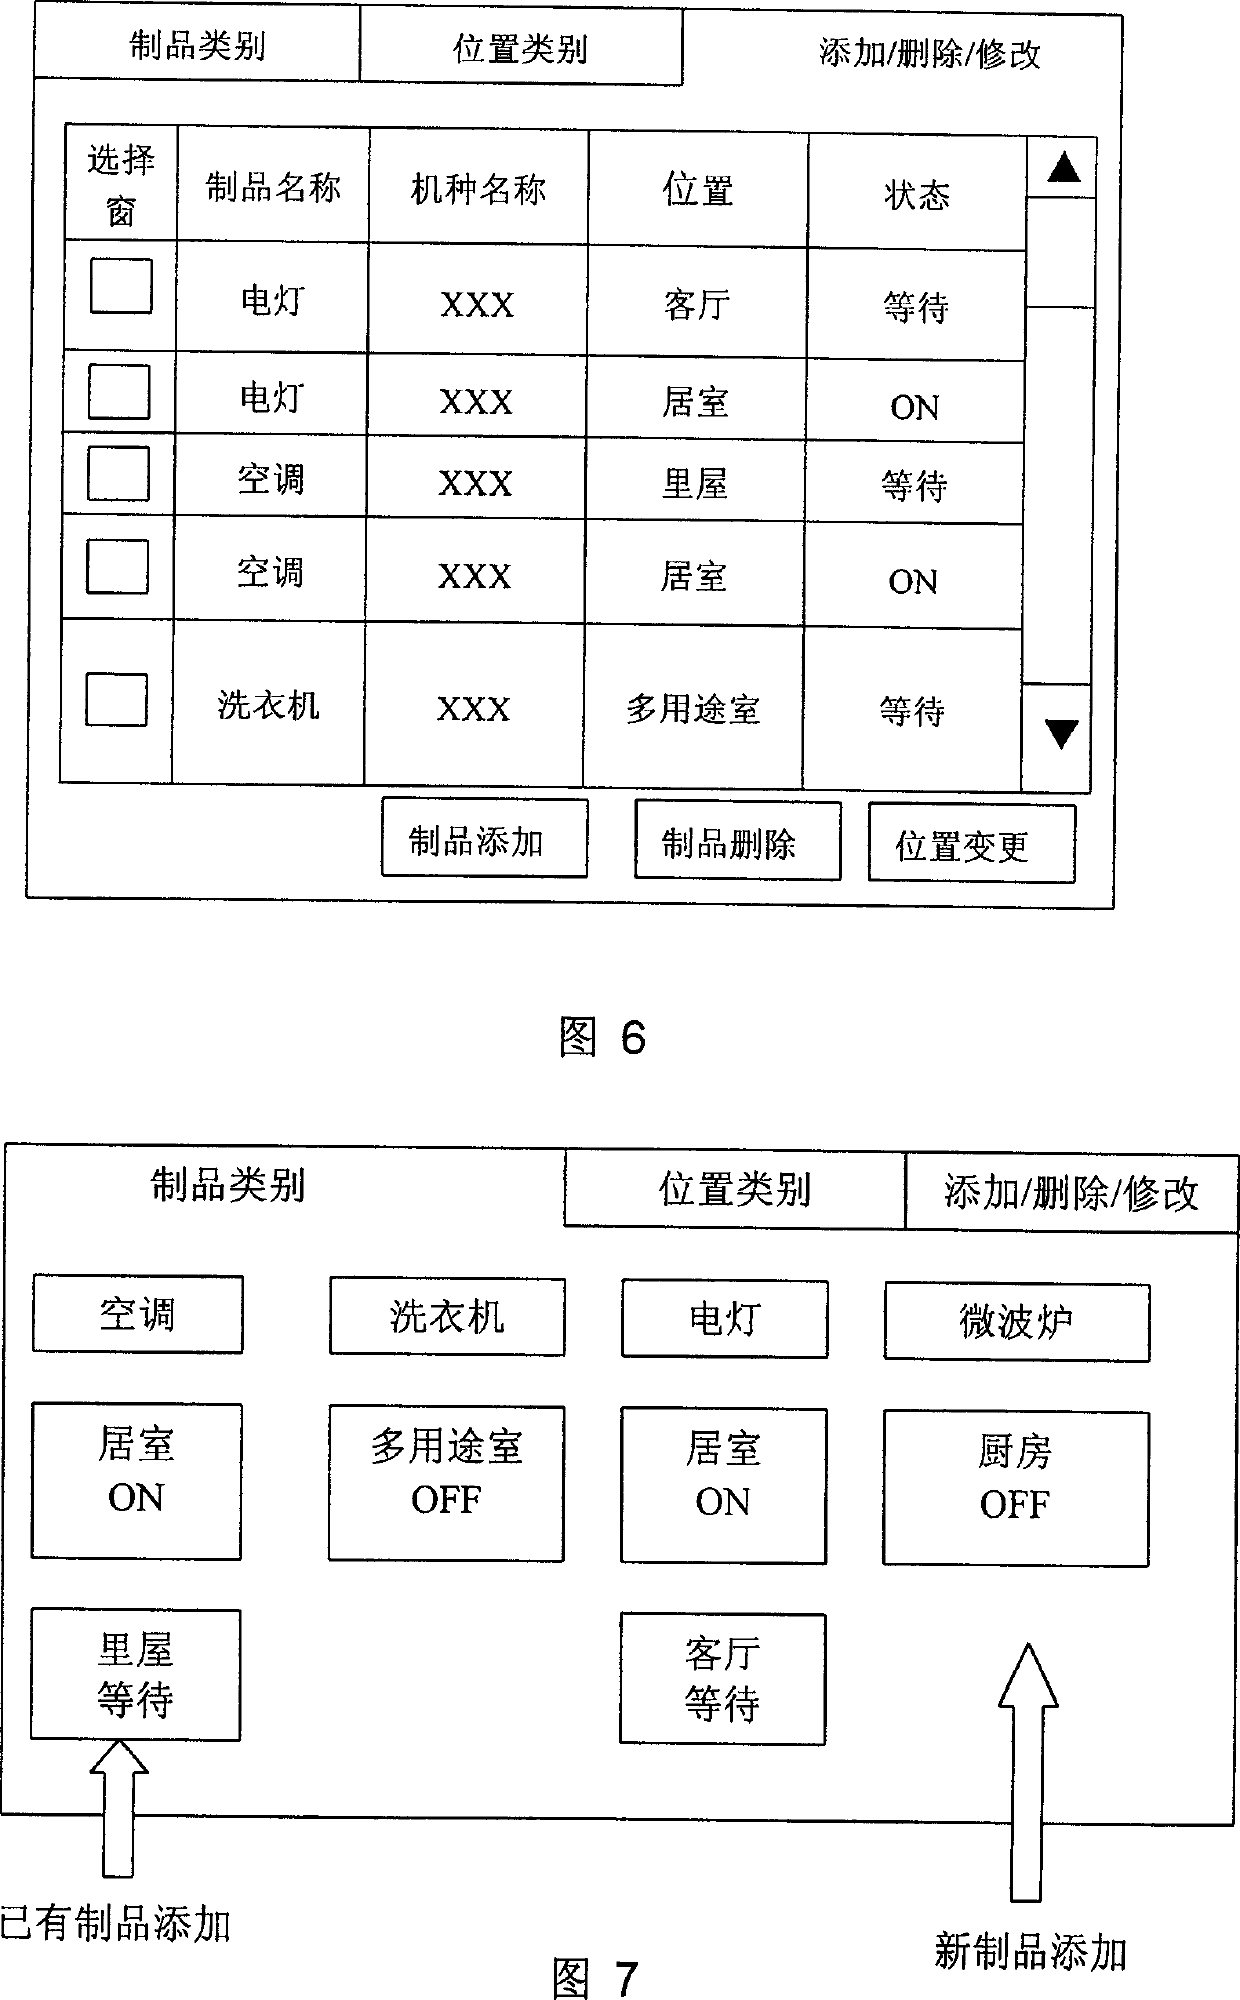 Household network system menu display method